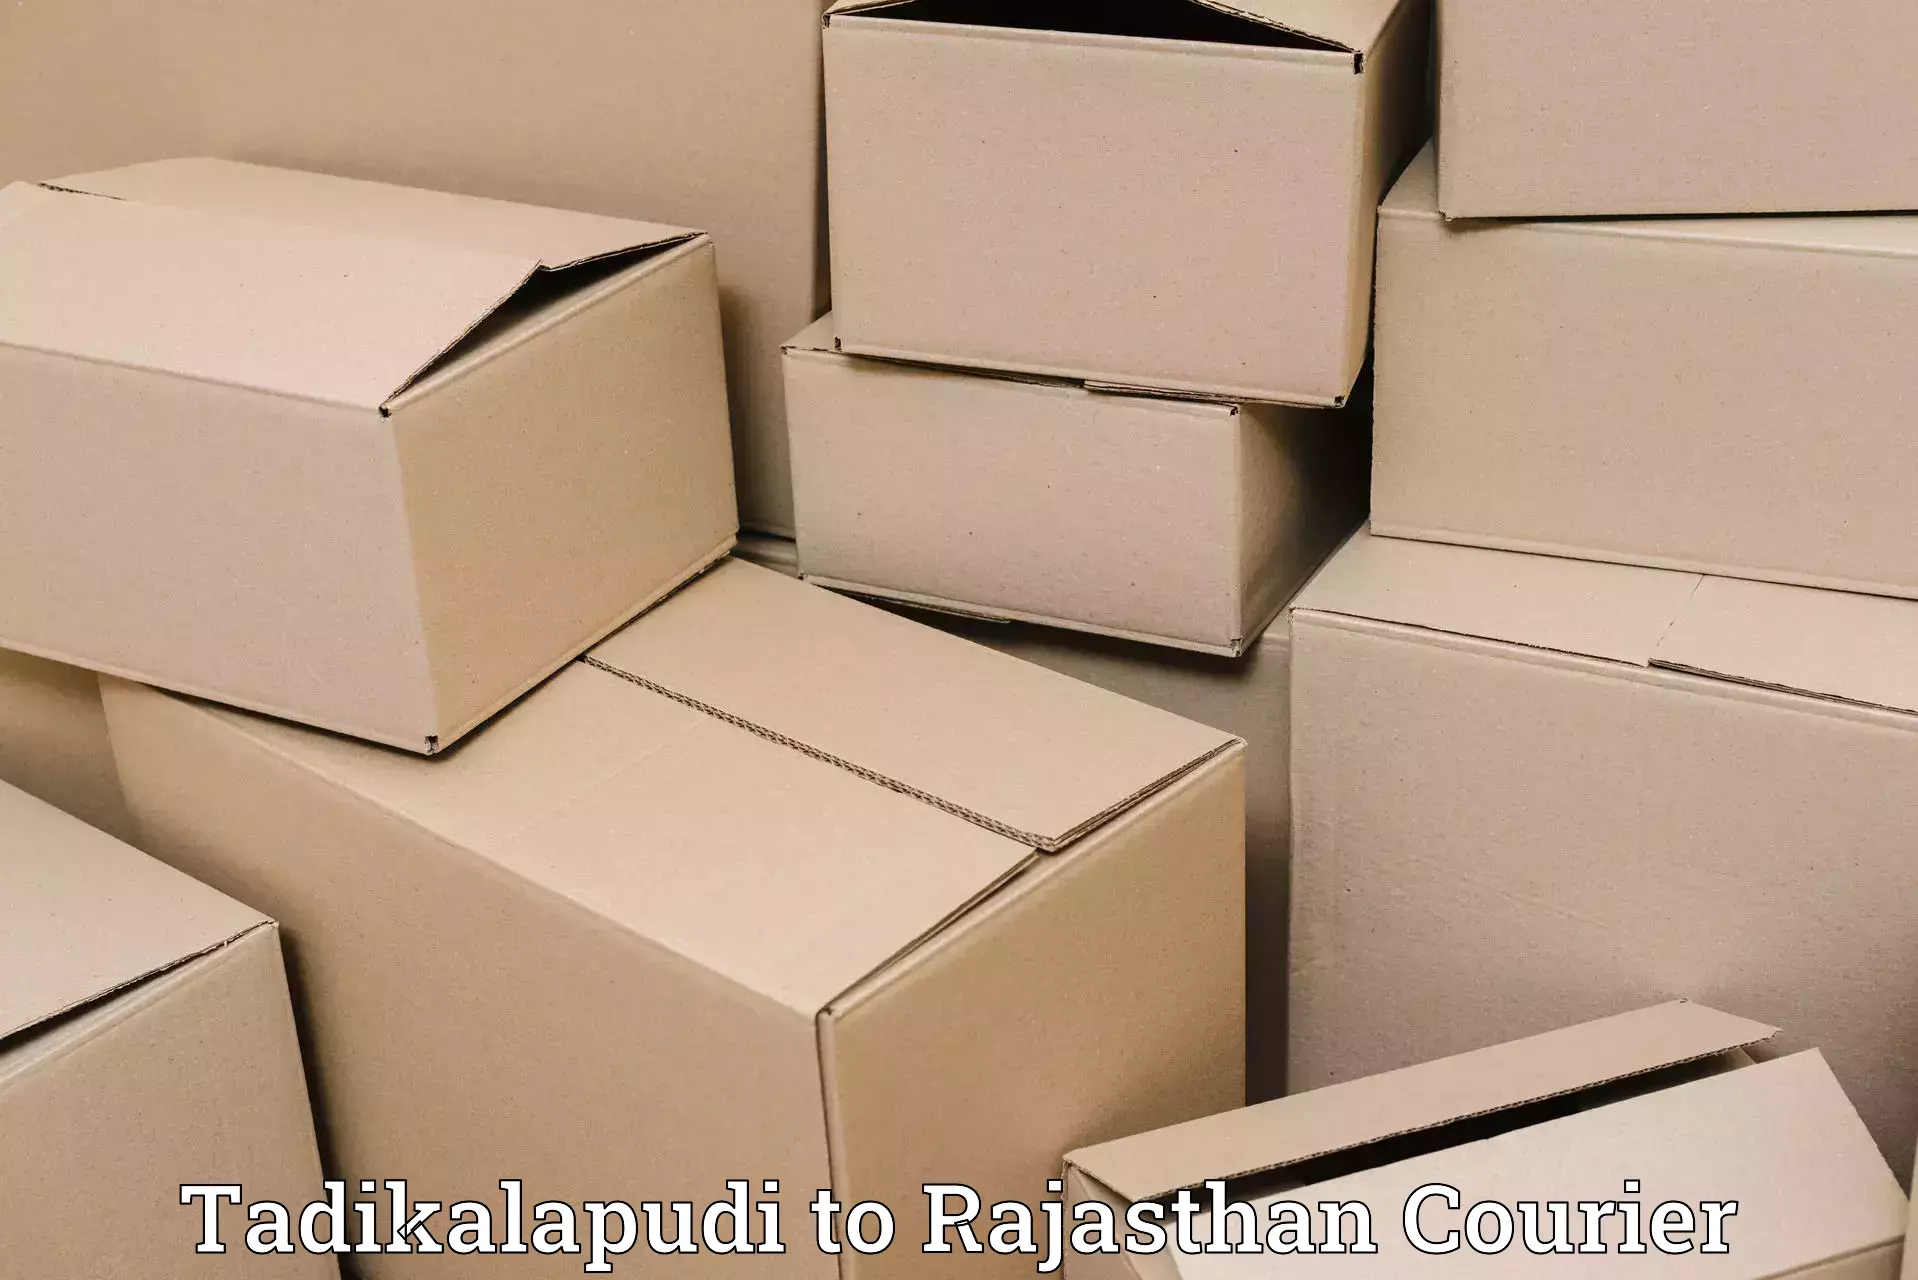 Baggage transport scheduler Tadikalapudi to Rajasthan